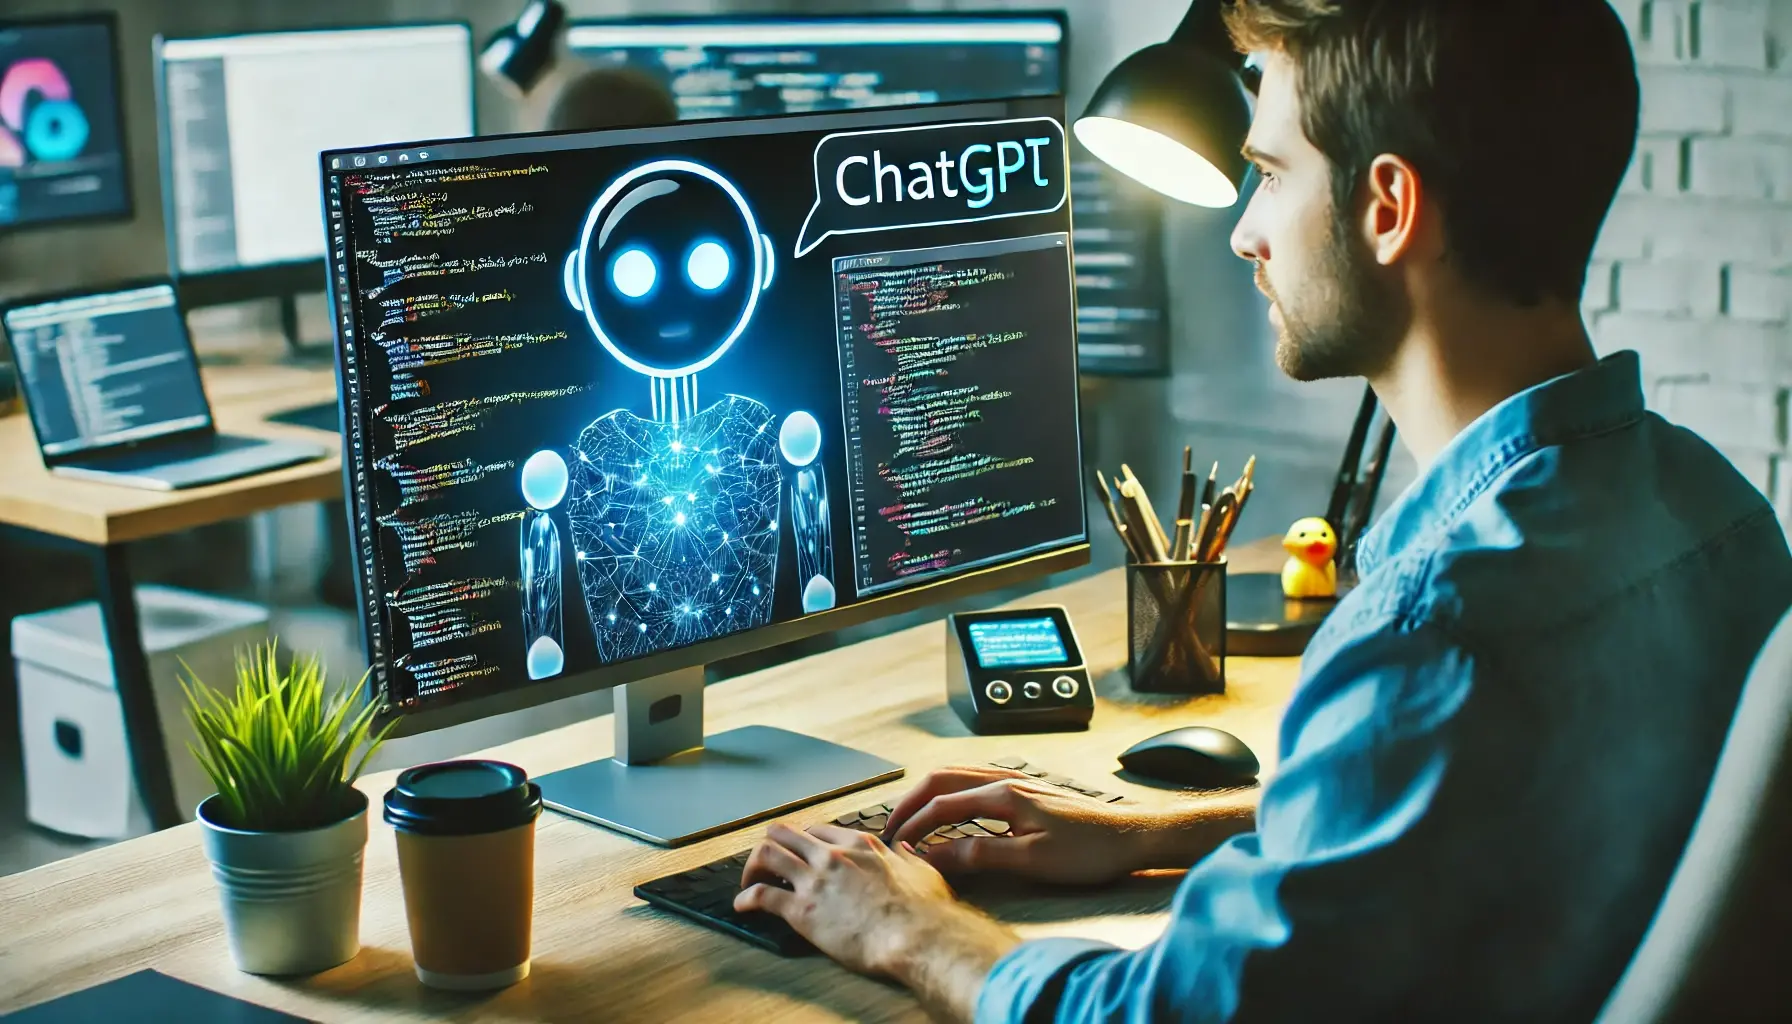 Se você é um desenvolvedor em busca de maneiras de impulsionar sua produtividade e criatividade, você veio ao lugar certo! O ChatGPT, uma poderosa ferramenta de inteligência artificial de conversação, pode ser um aliado incrível em seu processo de desenvolvimento. Neste artigo, exploraremos 22 prompts do ChatGPT que podem inspirar suas ideias, incentivando a inovação e a eficiência no seu trabalho.

1.